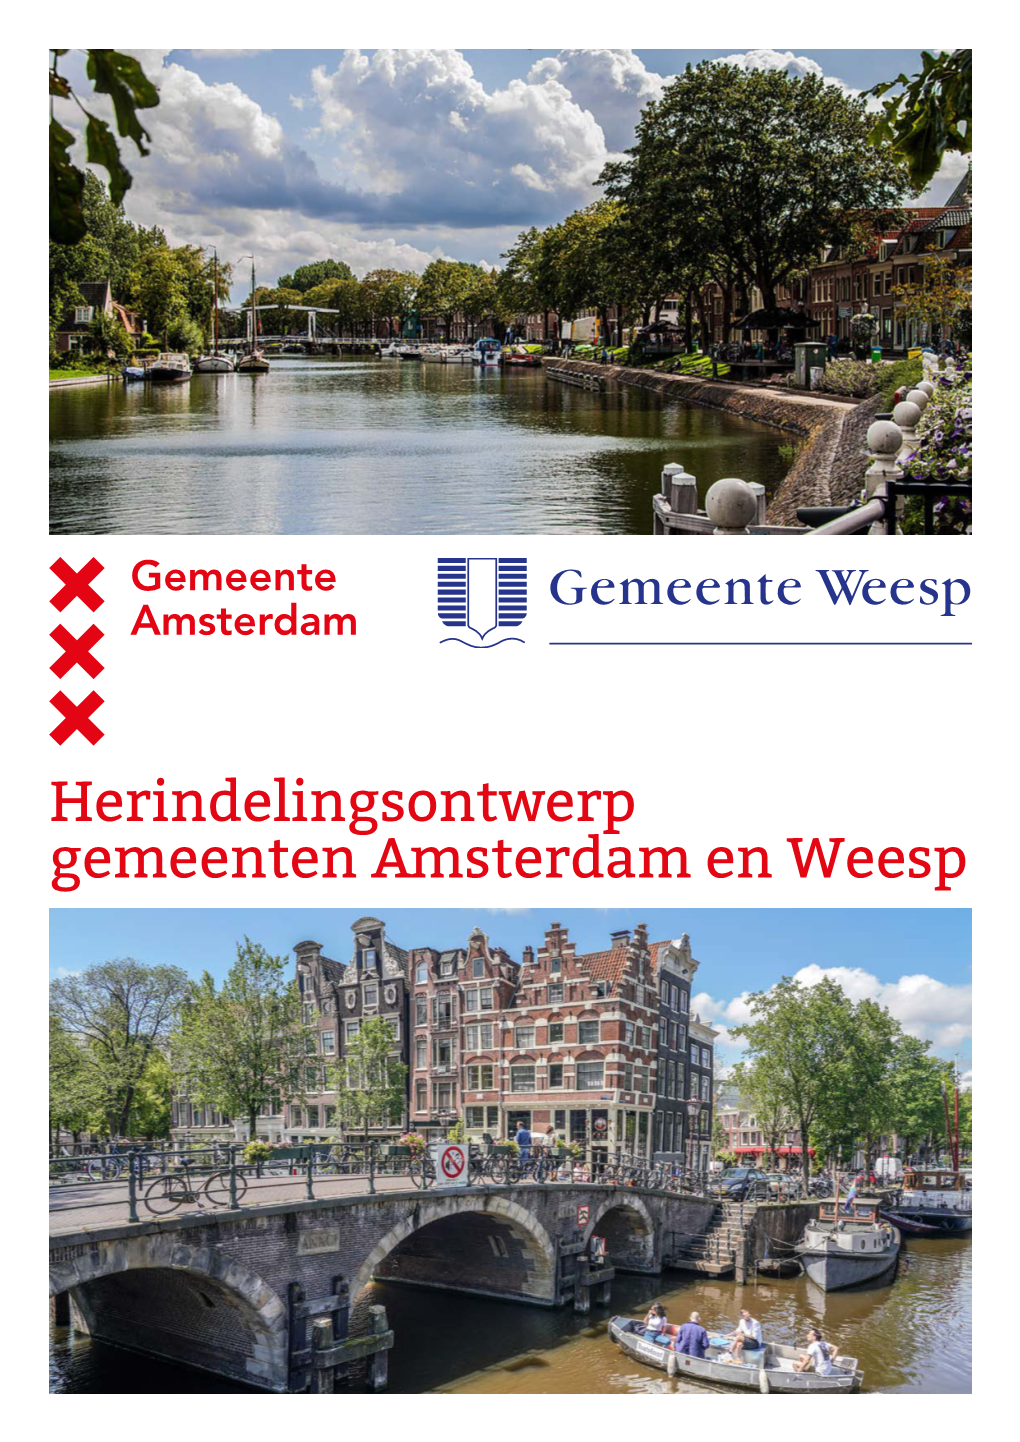 Herindelingsontwerp Gemeenten Amsterdam En Weesp Op De Cover Water in De Stad K Weesp: Blik Over De Vecht